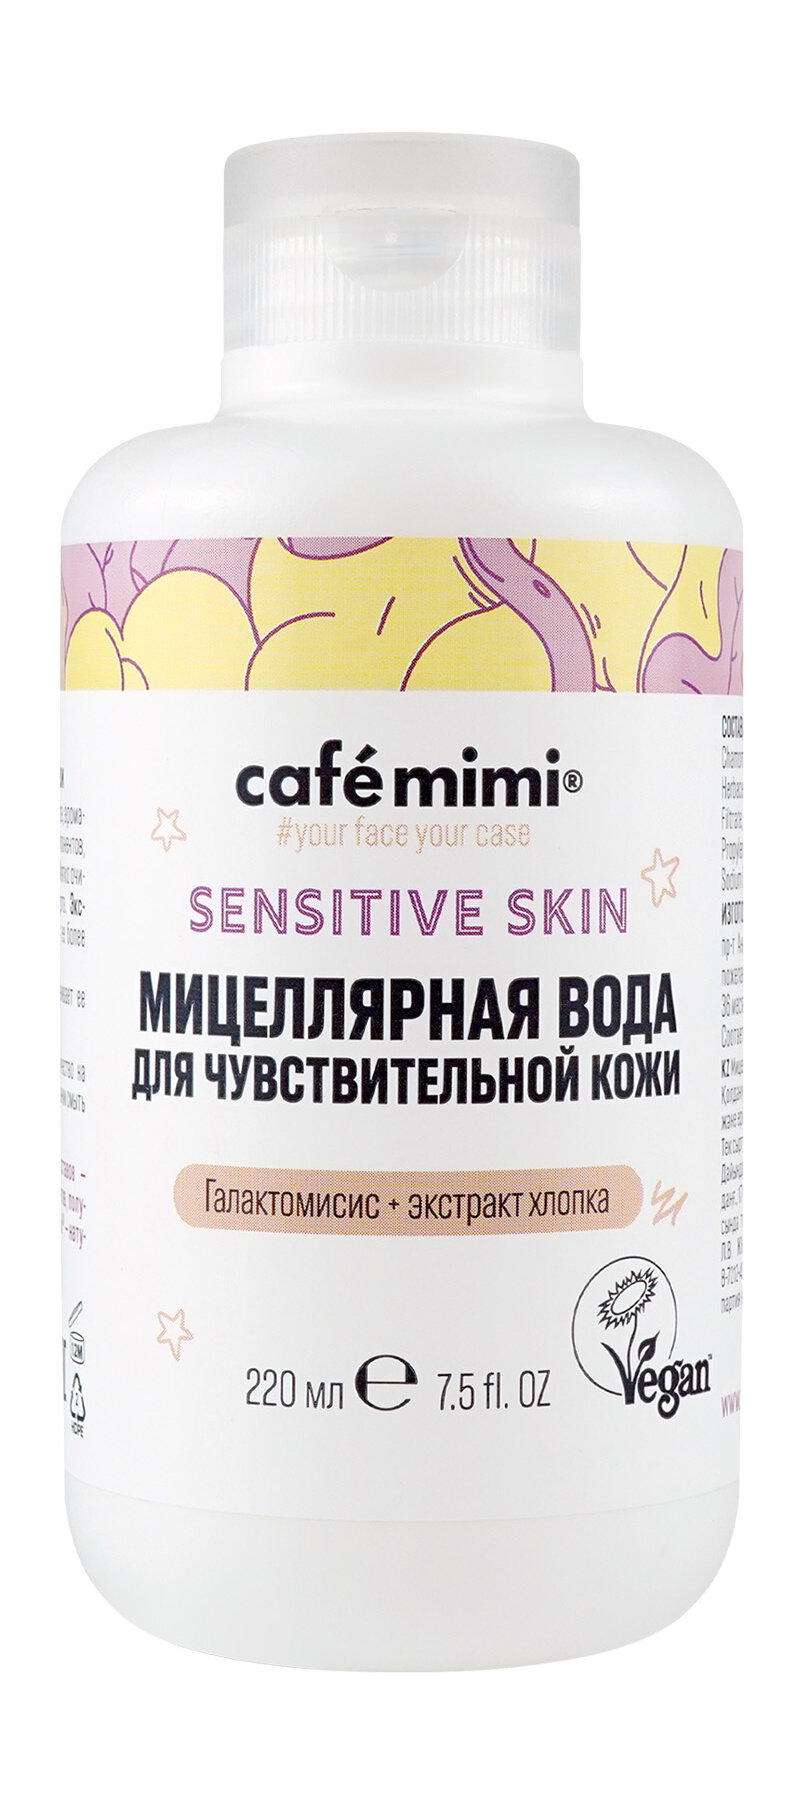 CAFE MIMI Мицеллярная вода для чувствительной кожи, 220 мл